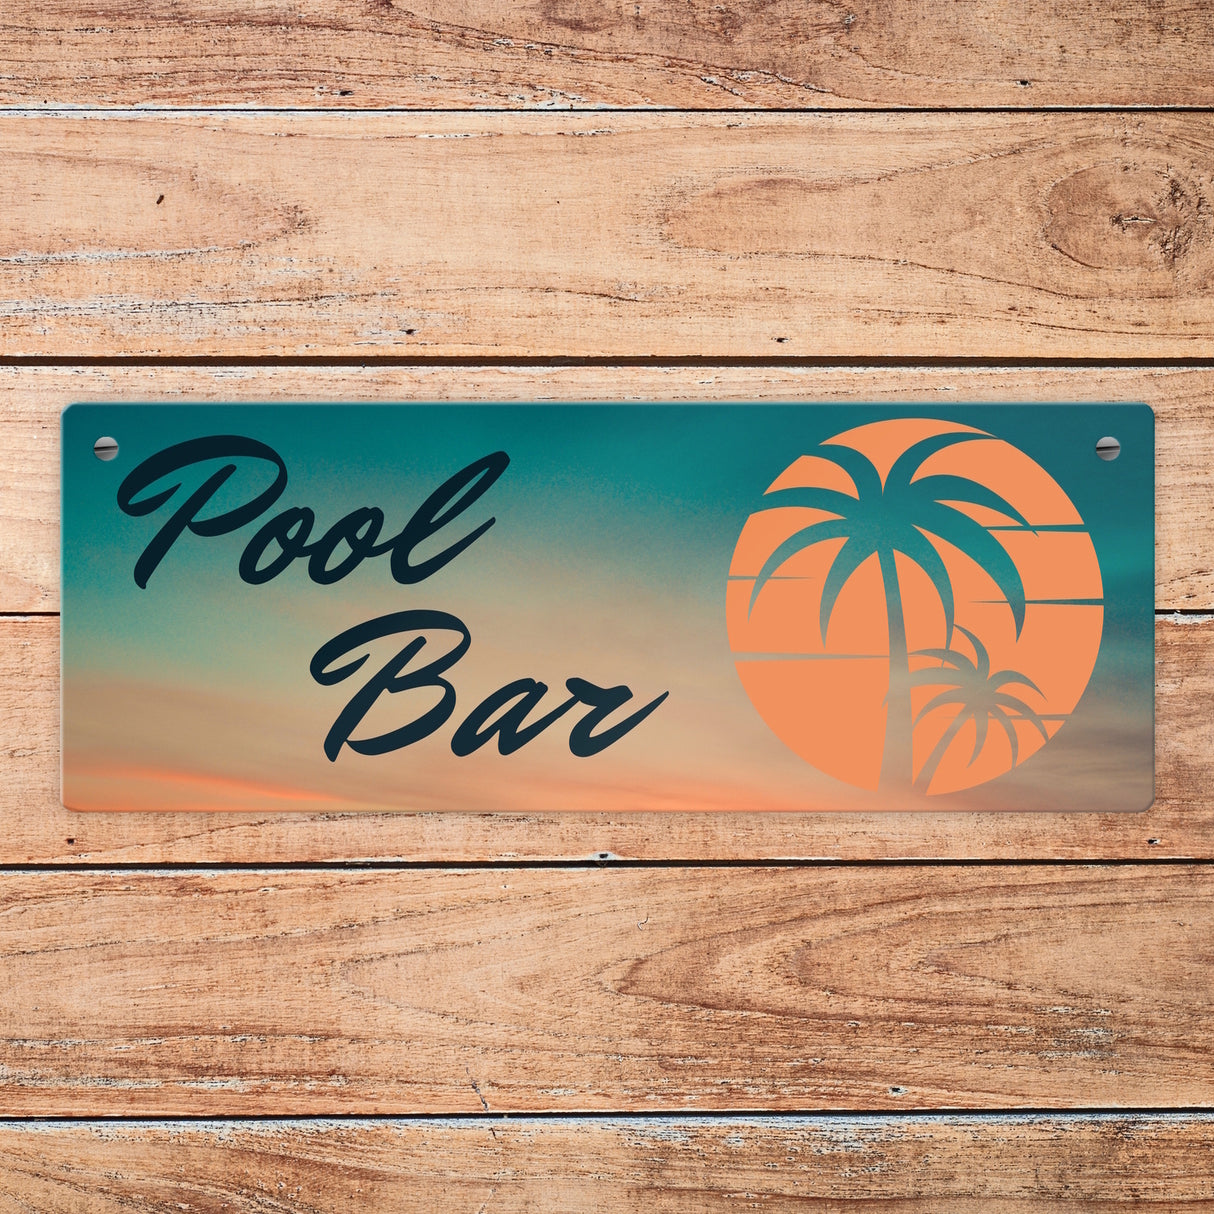 Pool Bar Metallschild mit Sonnenaufgang und Palmen